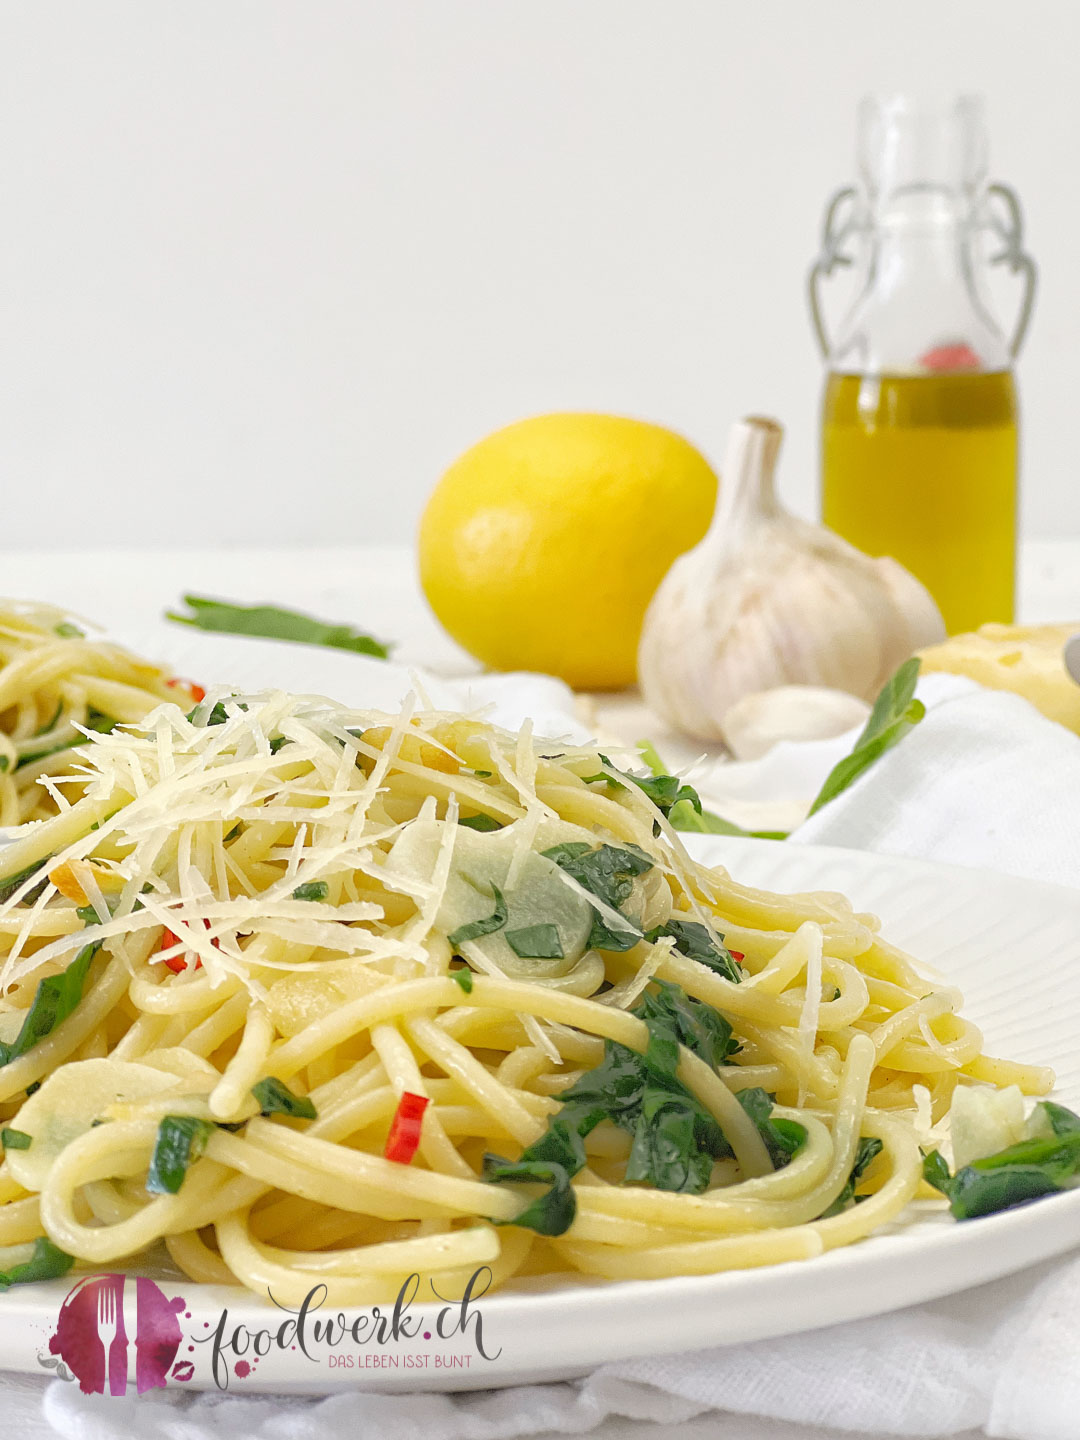 SPaghetti aglio e olio nah mit Olivenöl und Knoblauch im Hintergrund